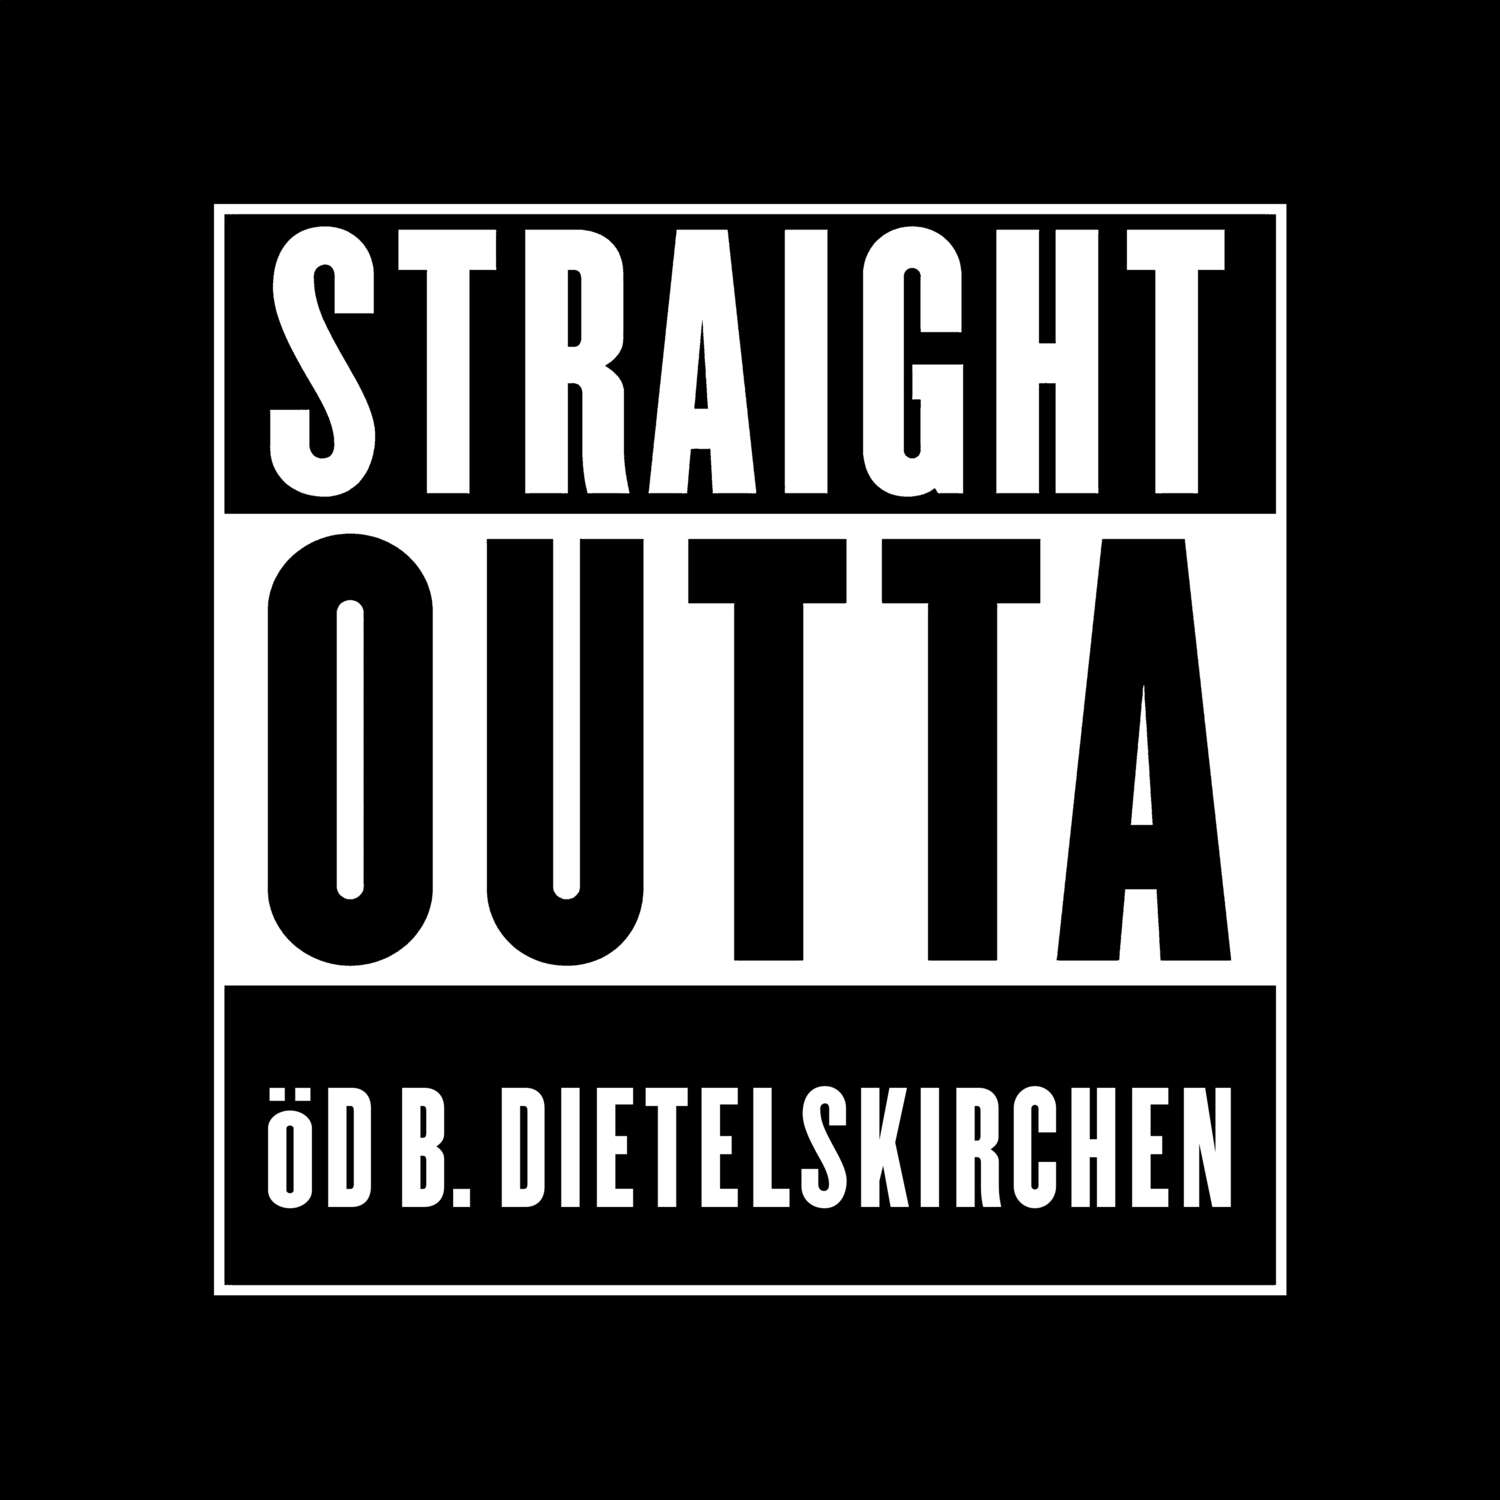 Öd b. Dietelskirchen T-Shirt »Straight Outta«